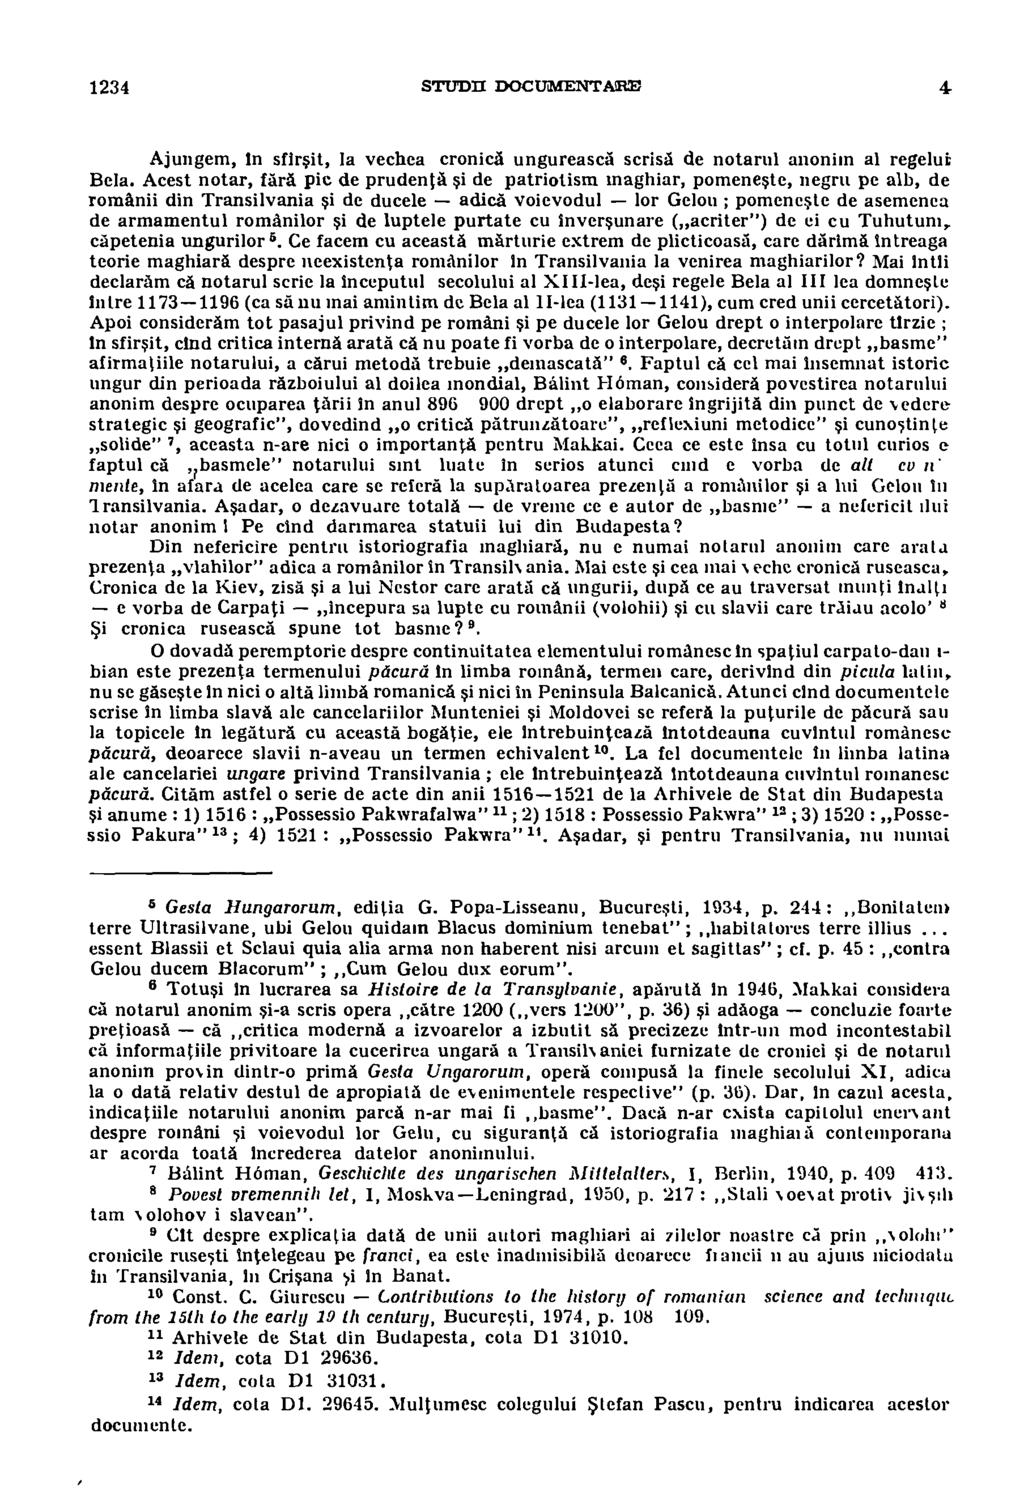 1234 STUDIC DOCUMENTARE Ajungem, in sfirsit, la vechea cronica ungureasca scrisa de notarul anonim al regelut Bela.